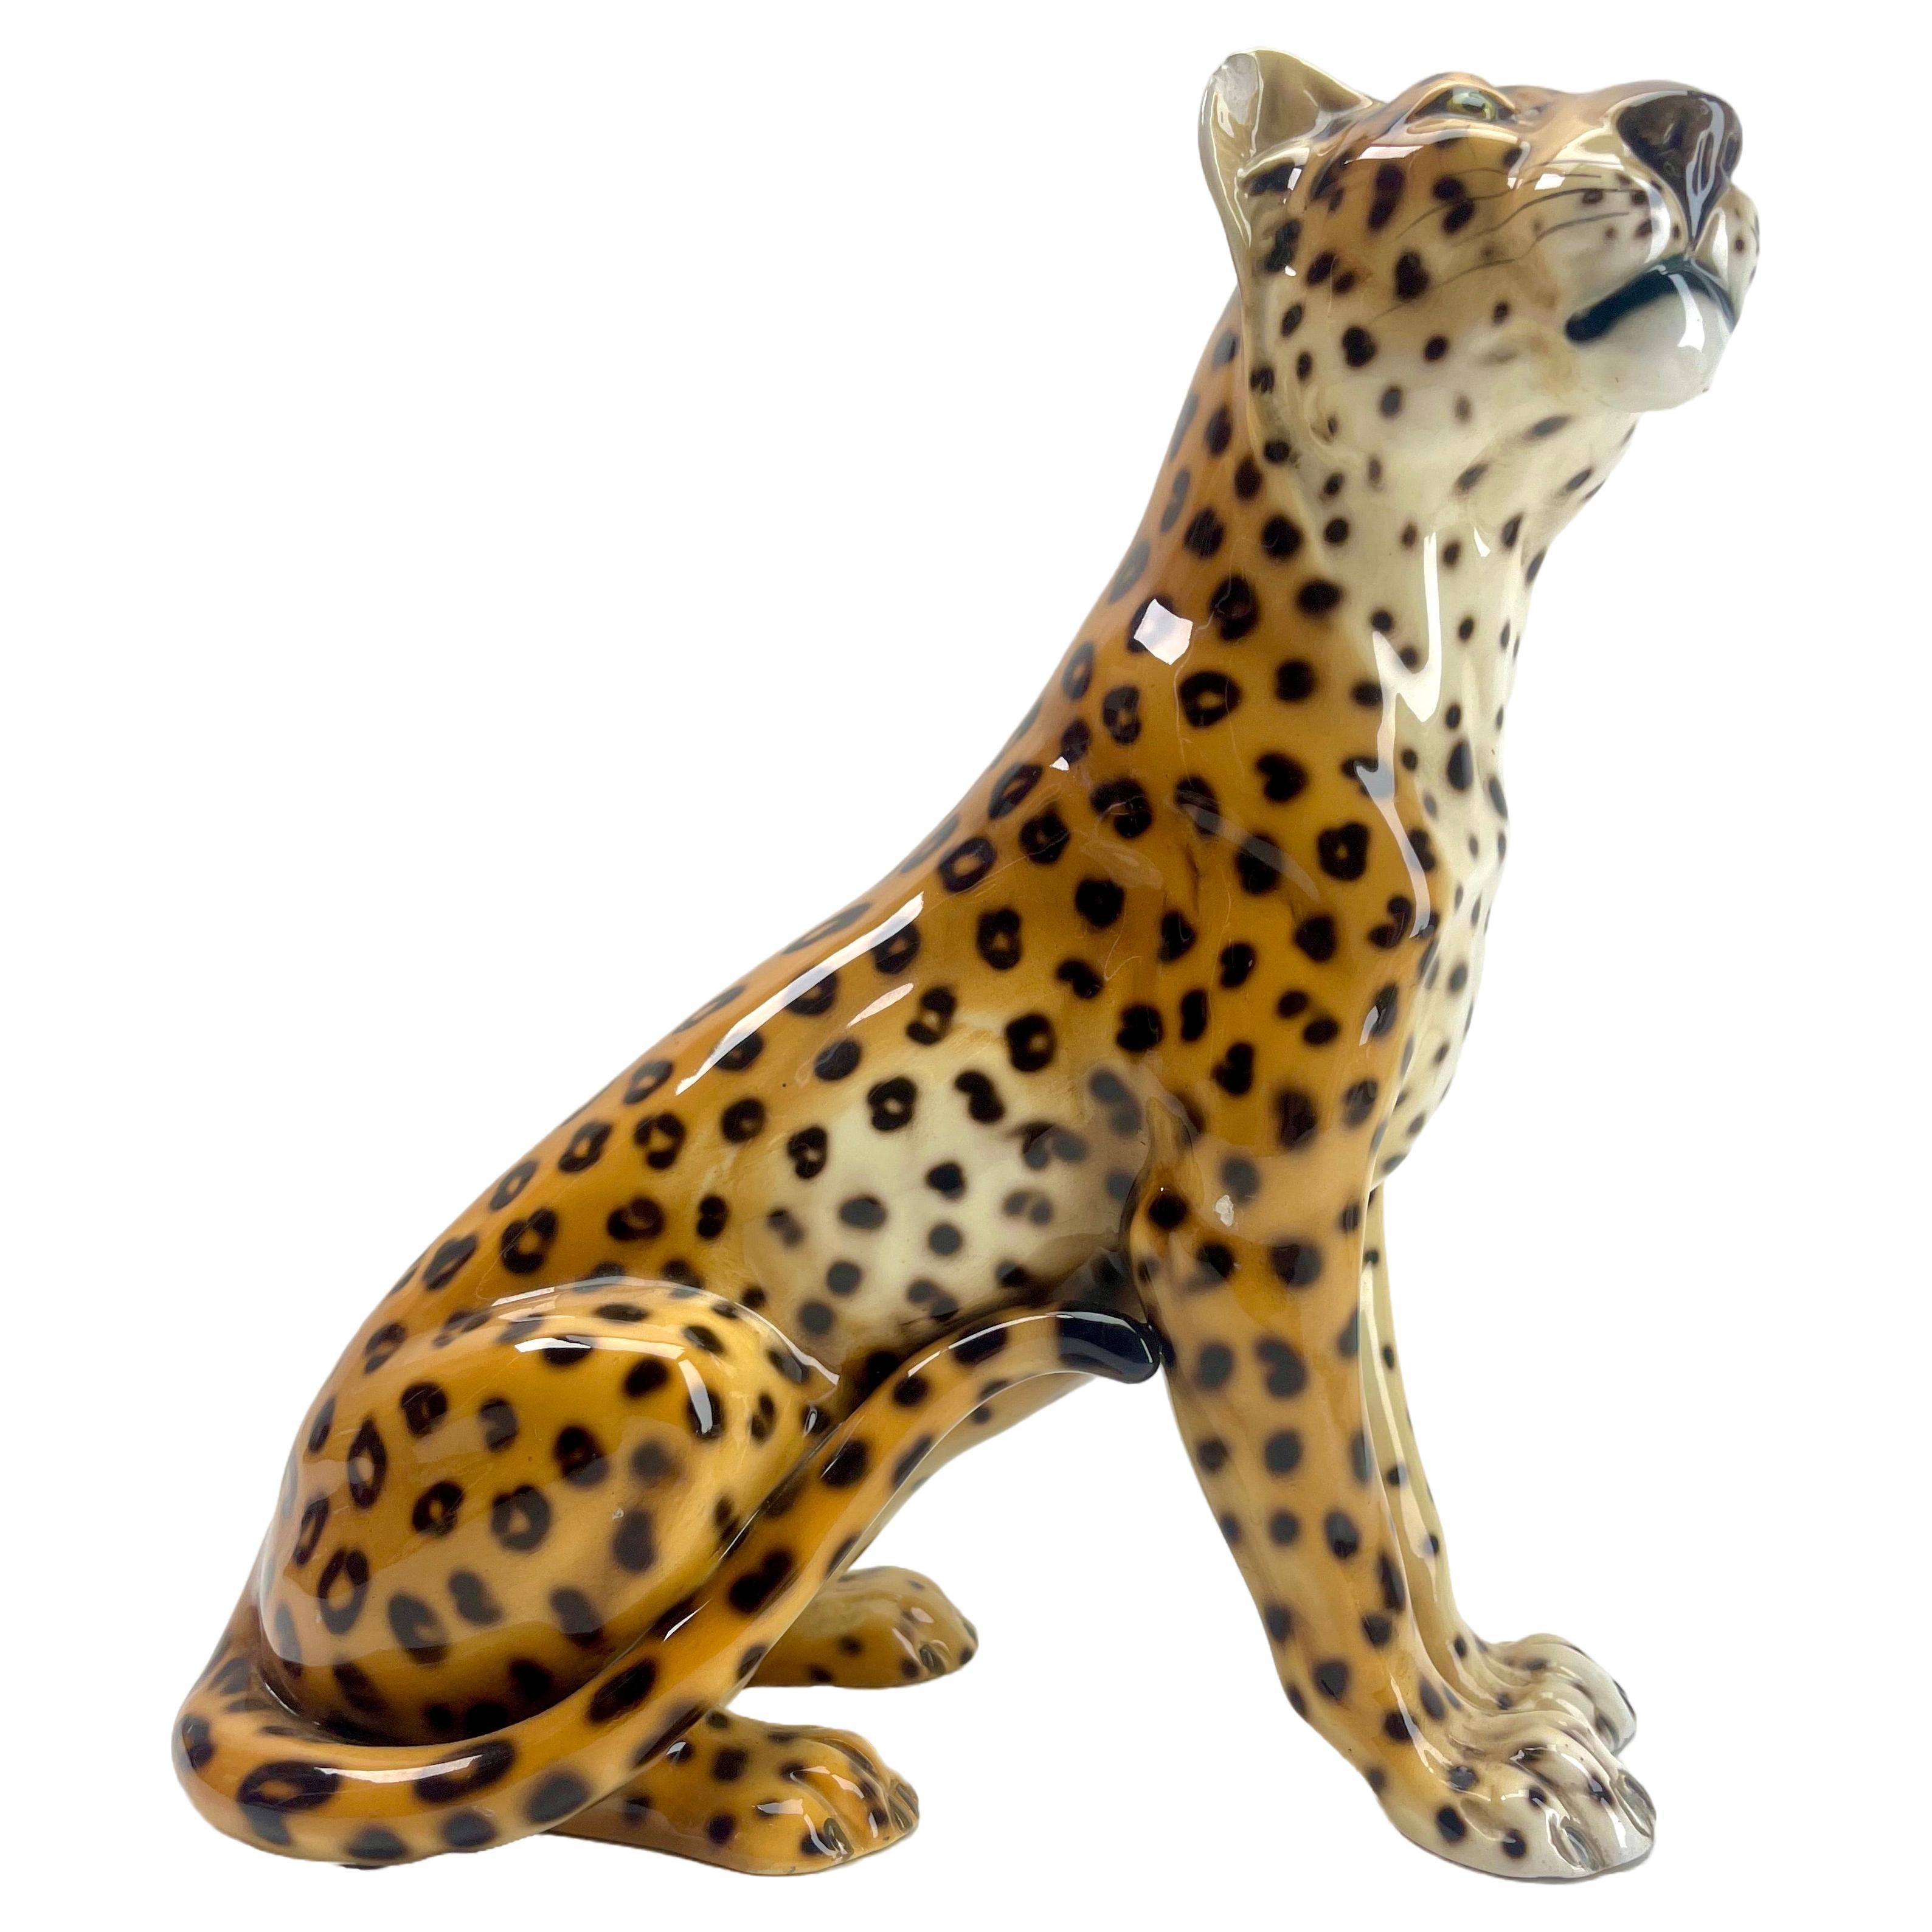 Diese stilvolle Leoparden-Skulptur stammt aus den späten 1950er- bis 1960er-Jahren und wurde in Italien hergestellt und signiert. Ronzan Nr. 1211/3
Diese Porzellanskulptur eines Leoparden ist ein Werk des italienischen Künstlers Ronzan. Sie kann auf